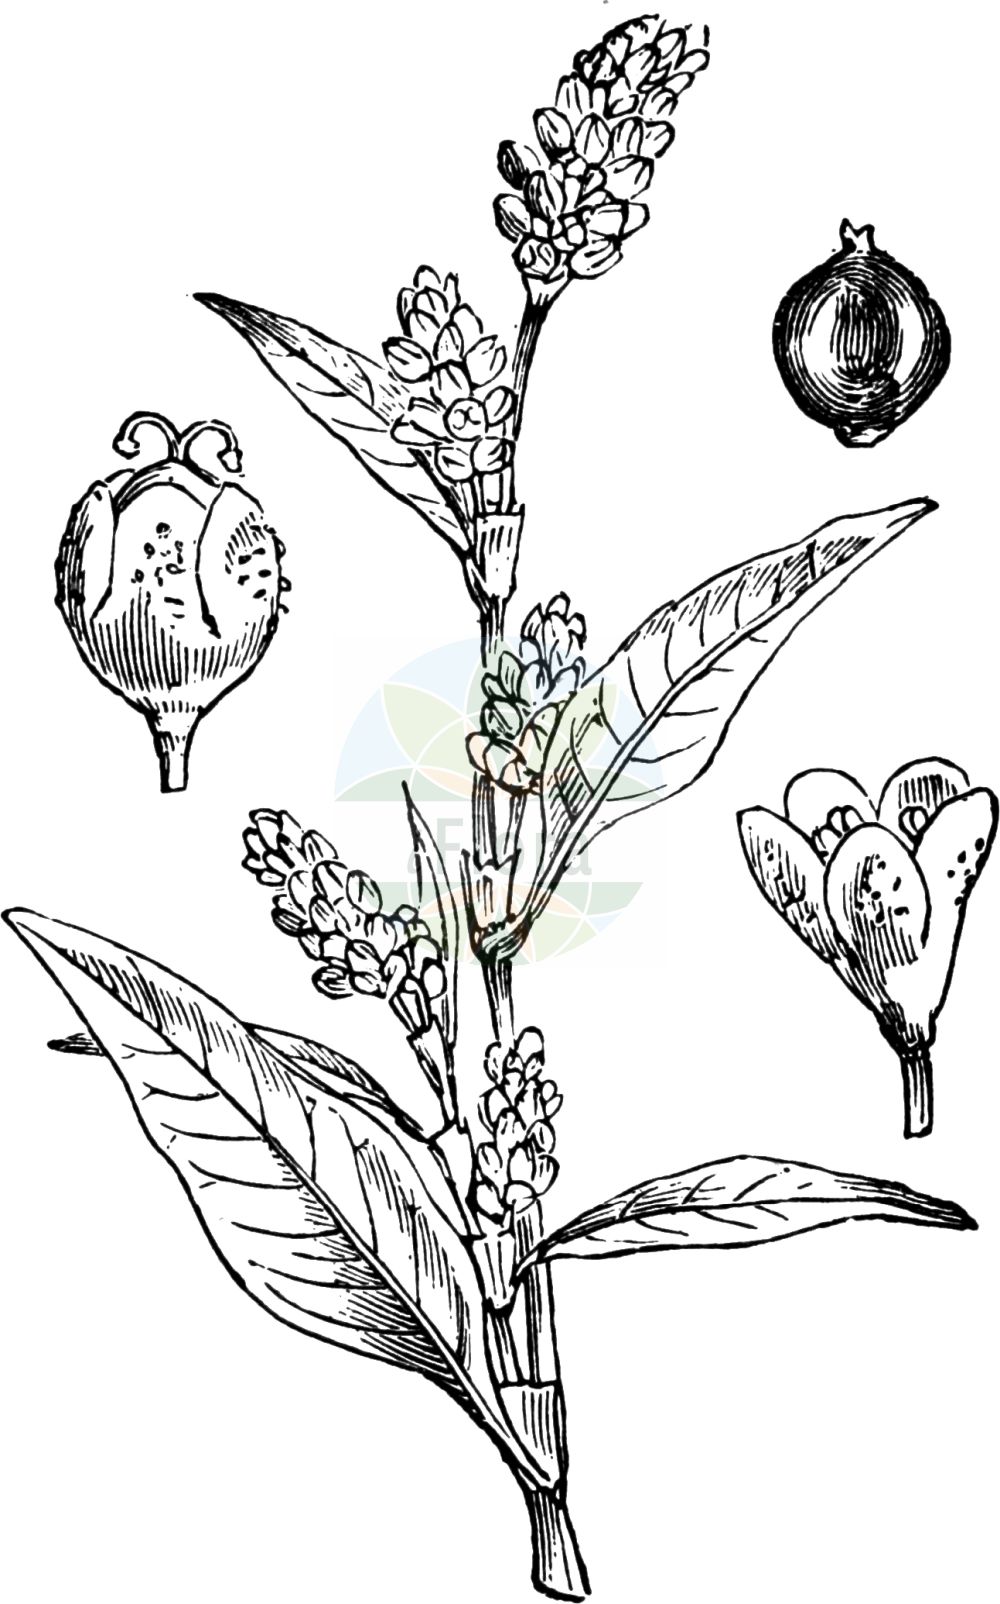 Historische Abbildung von Persicaria lapathifolia (Ampfer-Knöterich - Pale Persicaria). Das Bild zeigt Blatt, Bluete, Frucht und Same. ---- Historical Drawing of Persicaria lapathifolia (Ampfer-Knöterich - Pale Persicaria). The image is showing leaf, flower, fruit and seed.(Persicaria lapathifolia,Ampfer-Knöterich,Pale Persicaria,Persicaria lapathifolia,Persicaria tenuiflora,Polygonum lapathifolium,Polygonum tenuiflorum,Ampfer-Knoeterich,Acker-Ampferknoeterich,Filziger Knoeterich,Grauer Acker-Knoeterich,Lein-Ampfer-Knoeterich,Mittlerer Ampfer-Knoeterich,Pale Persicaria,Curlytop Smartweed,Bulbous Persicaria,Curlytop Knotweed,Dock-leaved Persicaria,Green Smartweed,Knotted Persicaria,Pale Smartweed,Pale Willow Weed,Persicaria,Knöterich,Knotgrass,Polygonaceae,Knöterichgewächse,Knotgrass family,Blatt,Bluete,Frucht,Same,leaf,flower,fruit,seed,Fitch et al. (1880))